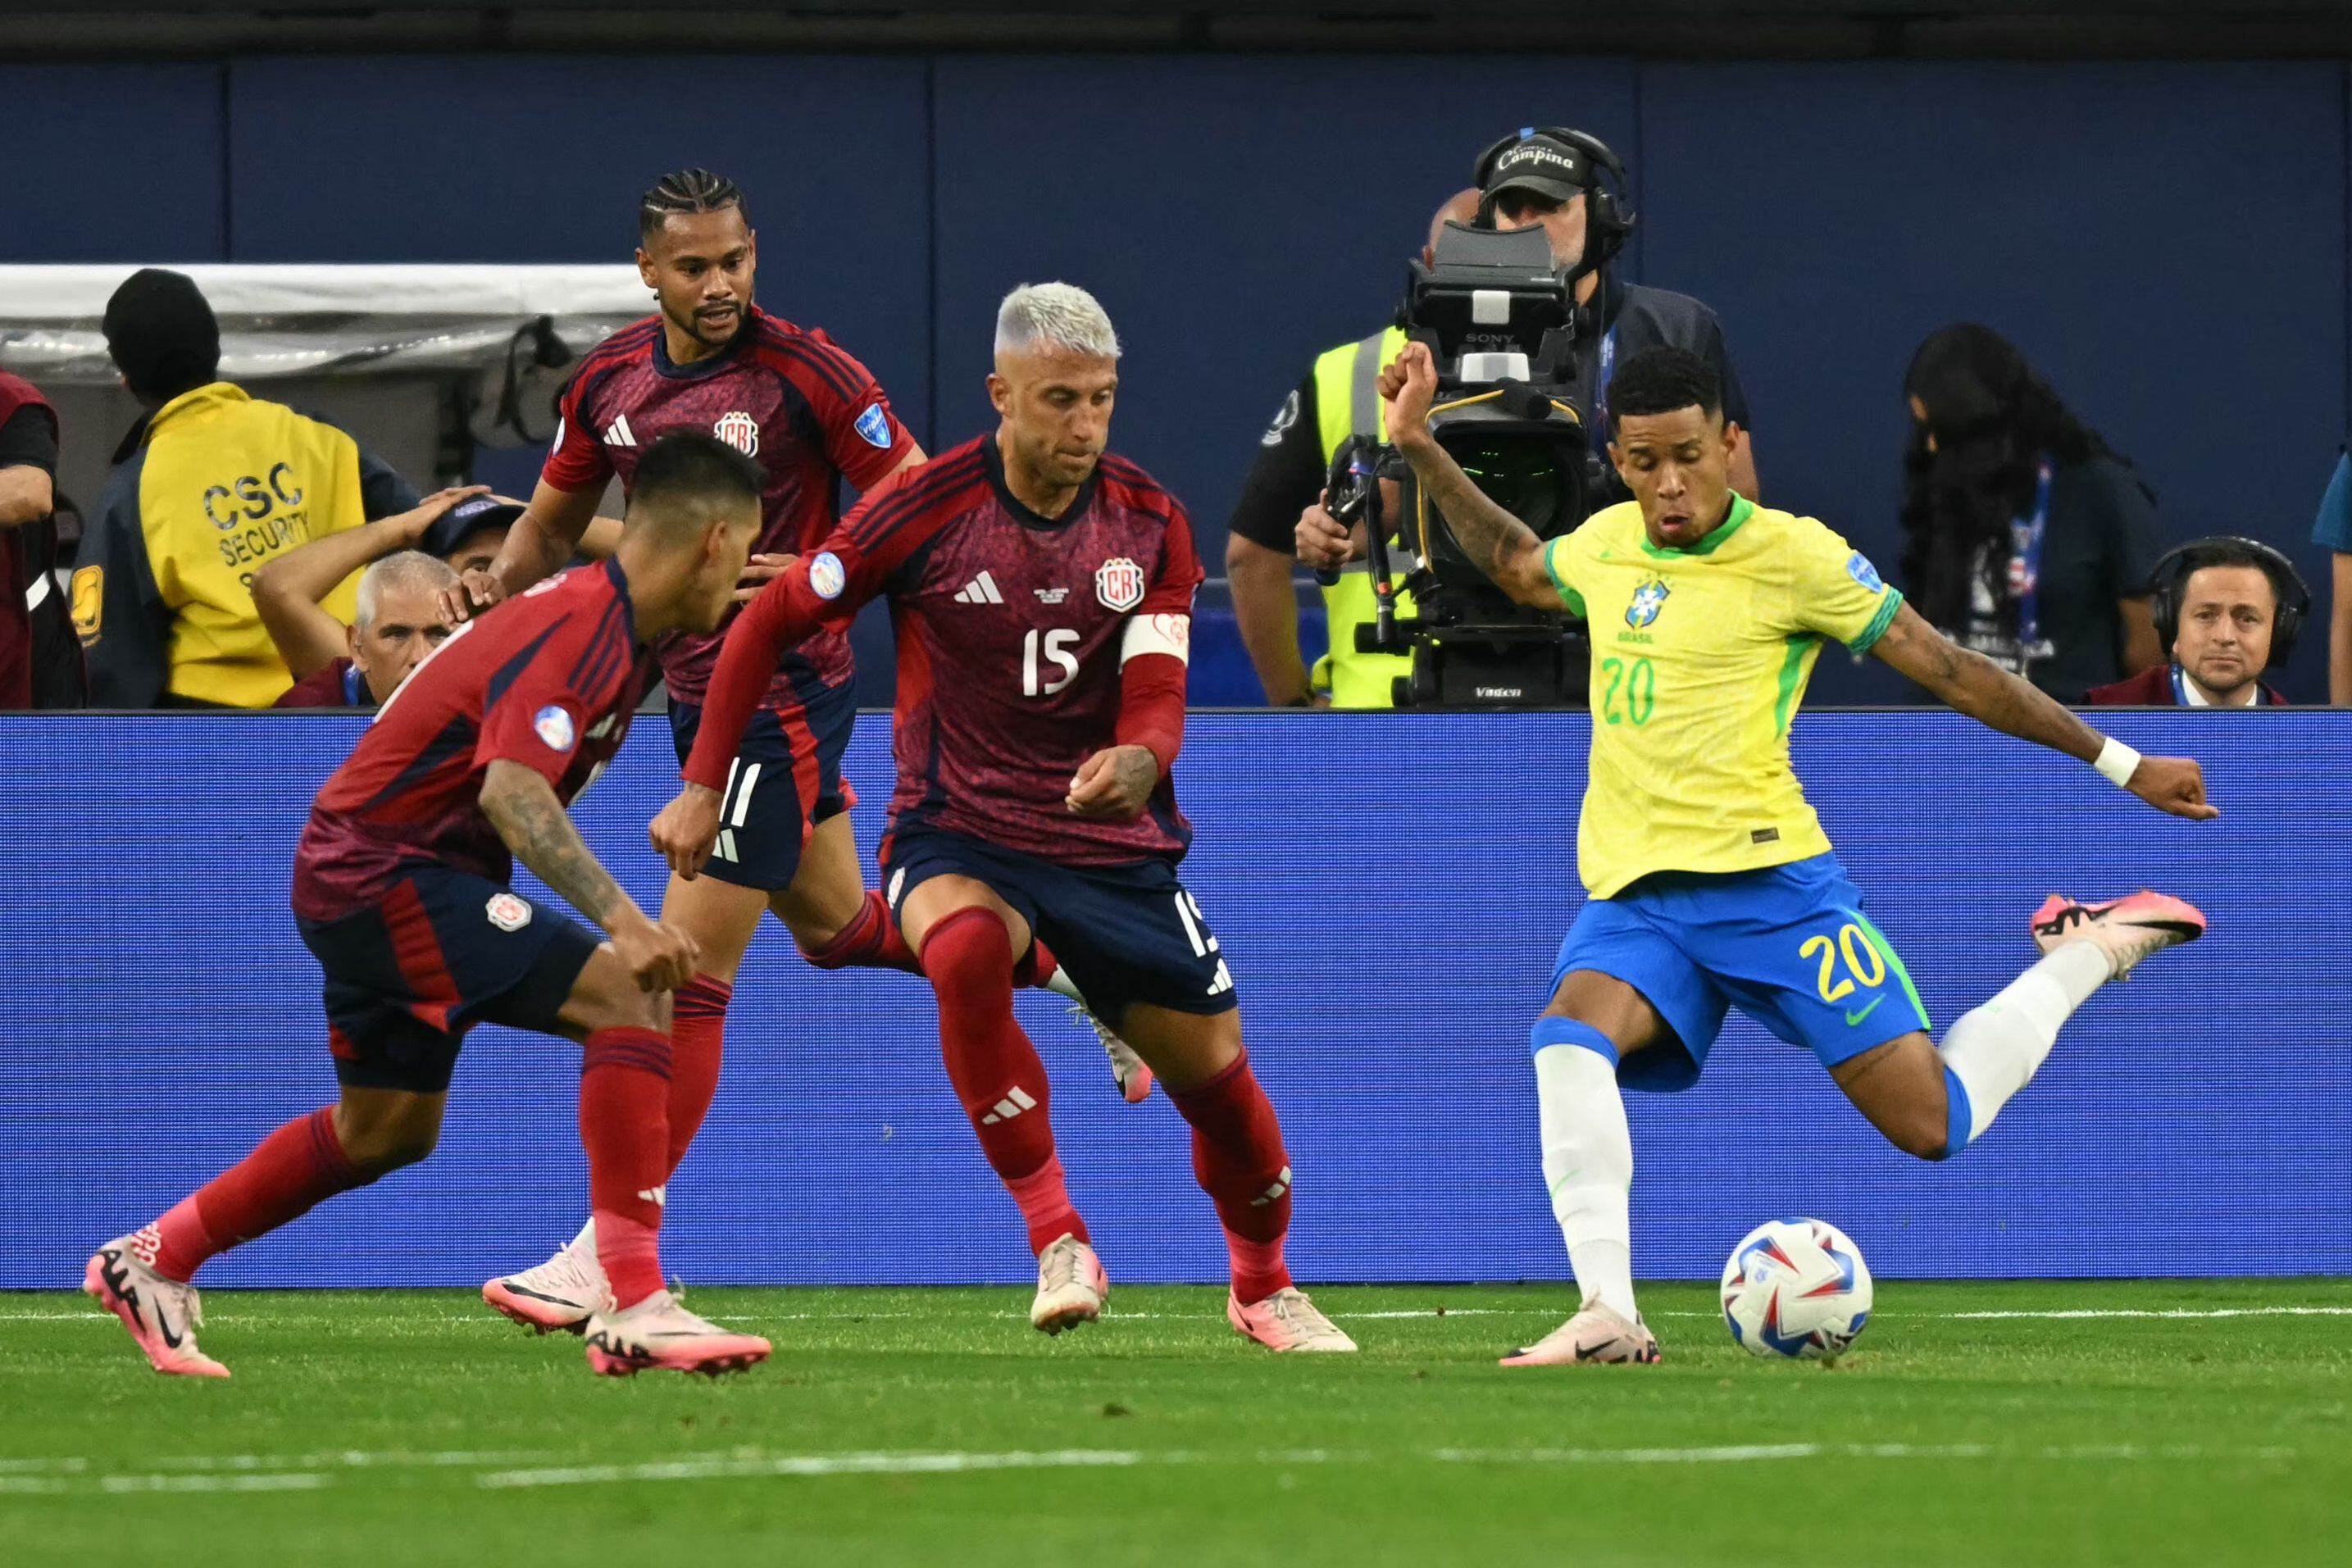 La Selección de Costa Rica logró controlar a Brasil con su buena marca y los jugadores de Colombia esperan que la ‘Tricolor’ cambie el estilo. Savinho fue ahogado por la marca de Orlando Galo, Álvaro Zamora y Ariel Lassiter.